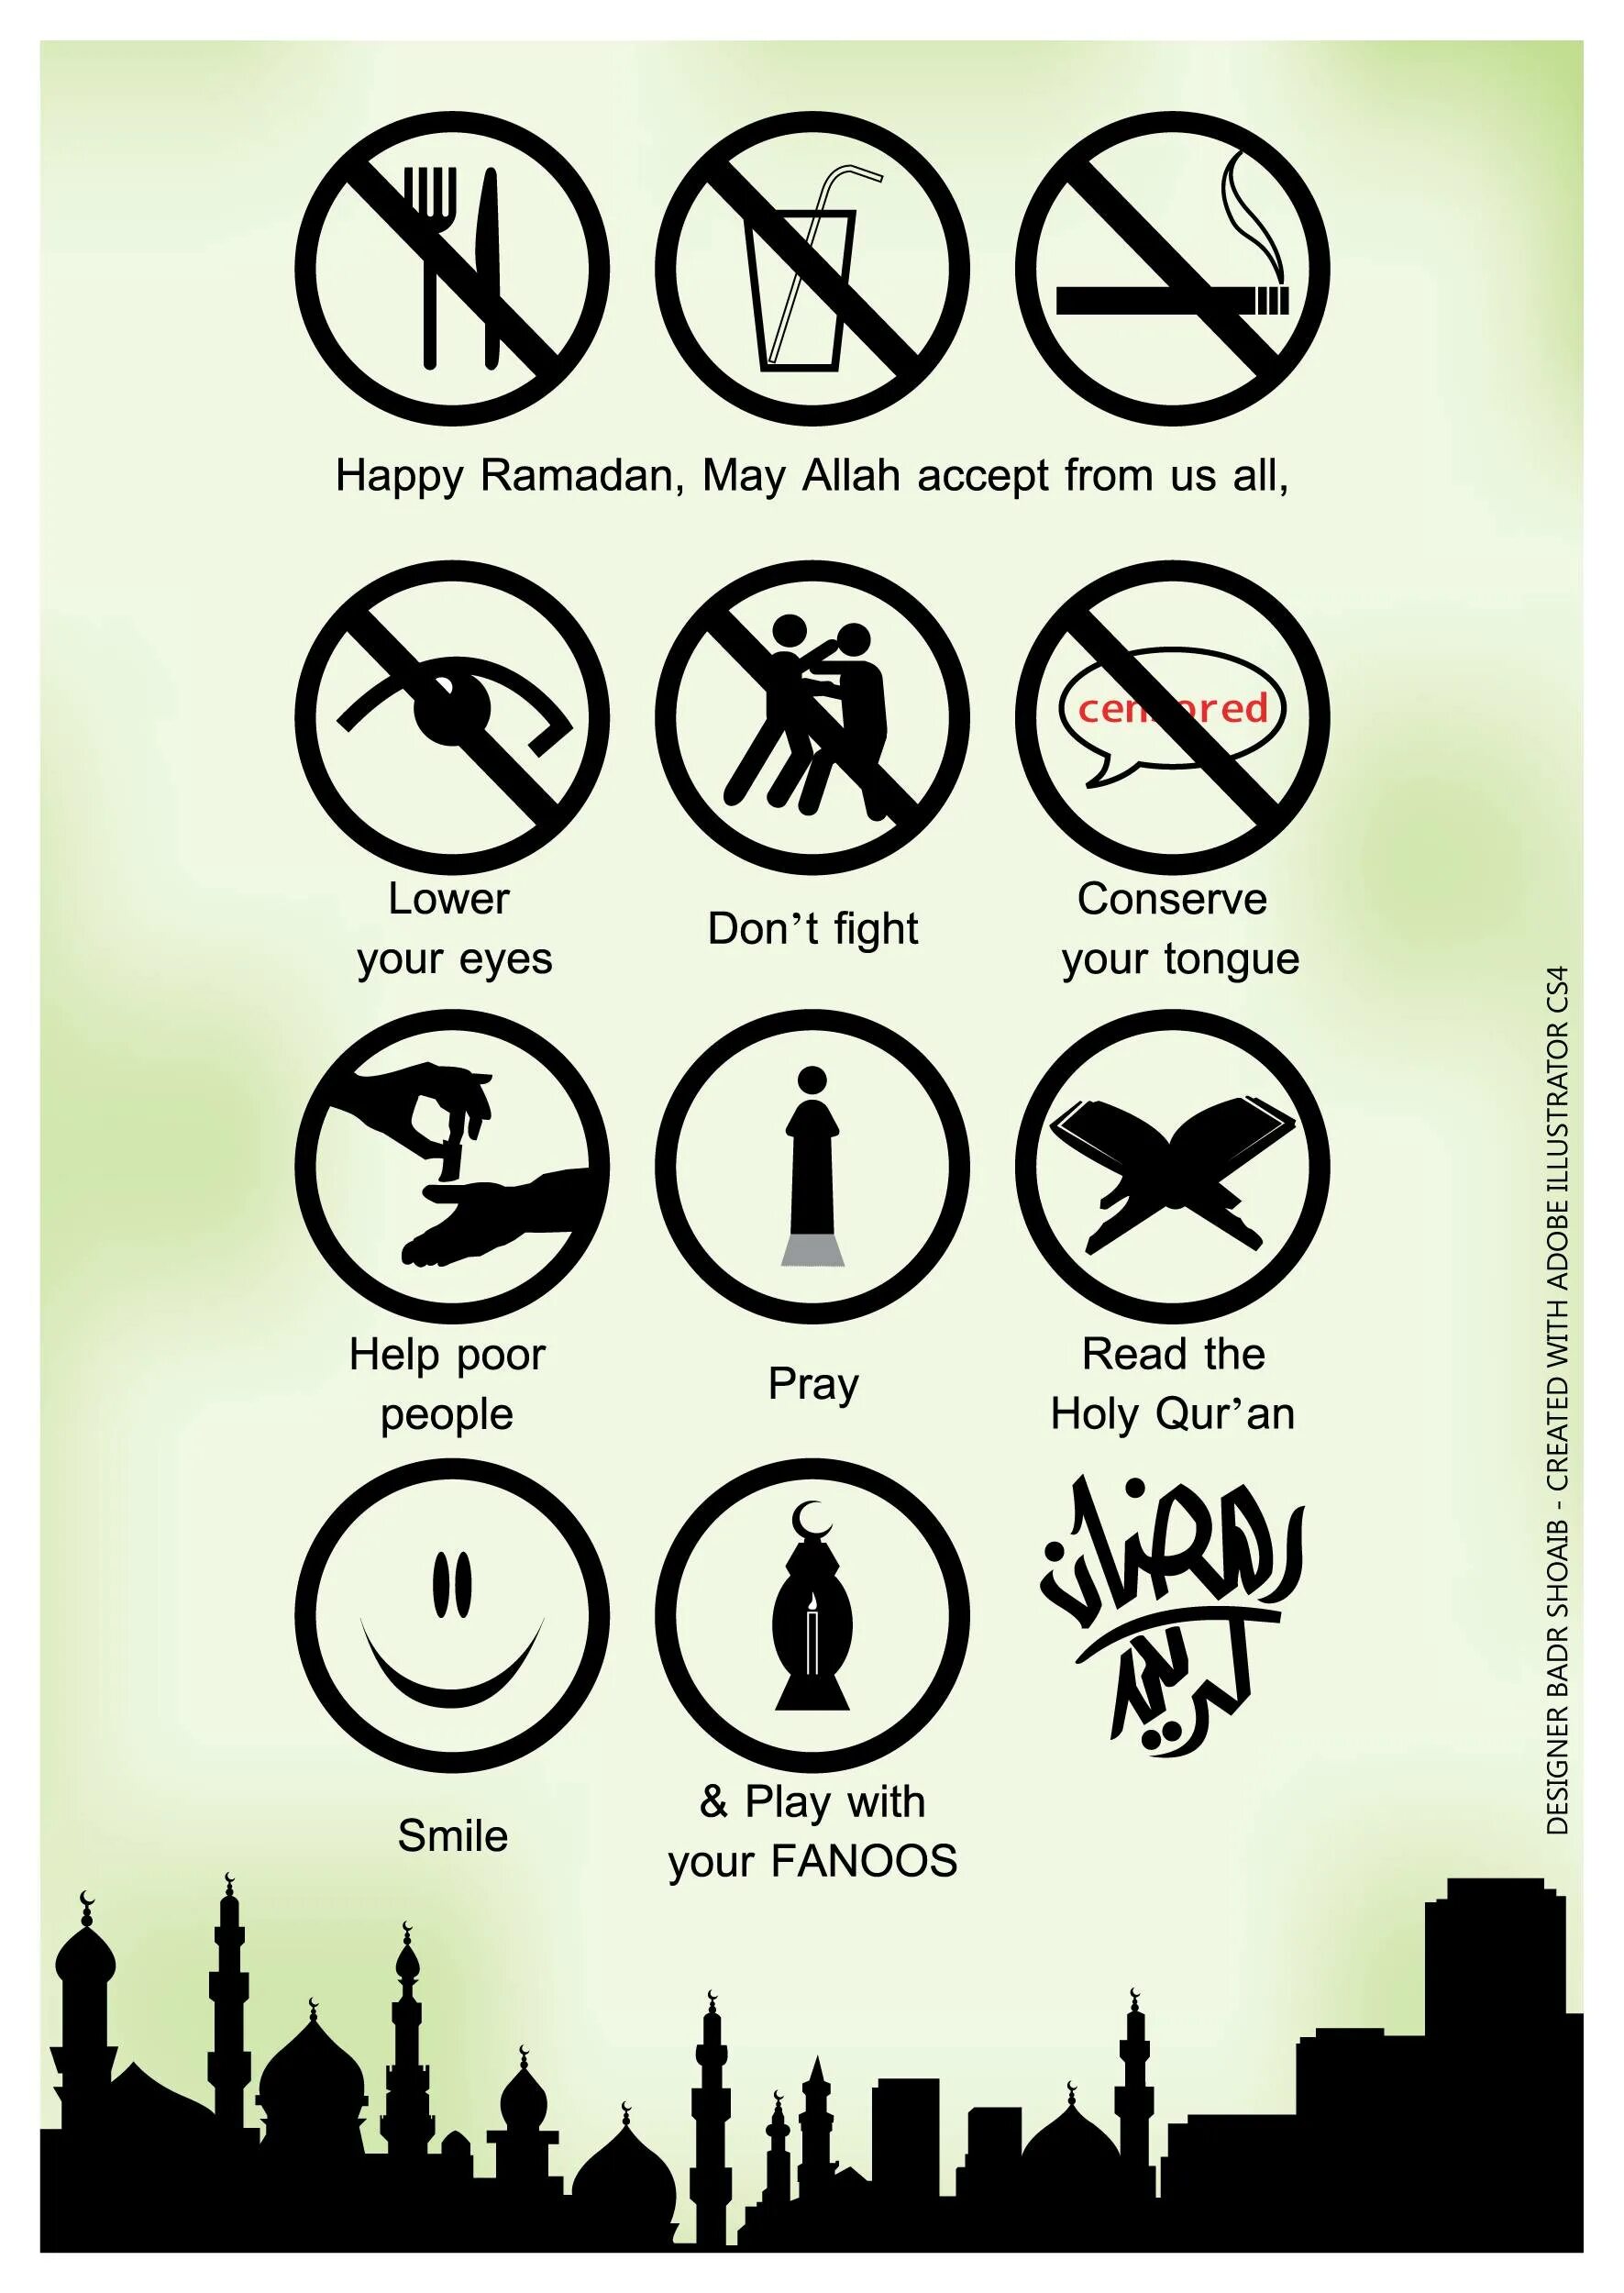 Пост у мусульман что можно что нельзя. Рамадан. Что запрещено делать в Рамадан. Что запрещено делать в месяц Рамадан. Запреты в Рамадан для мужчин.